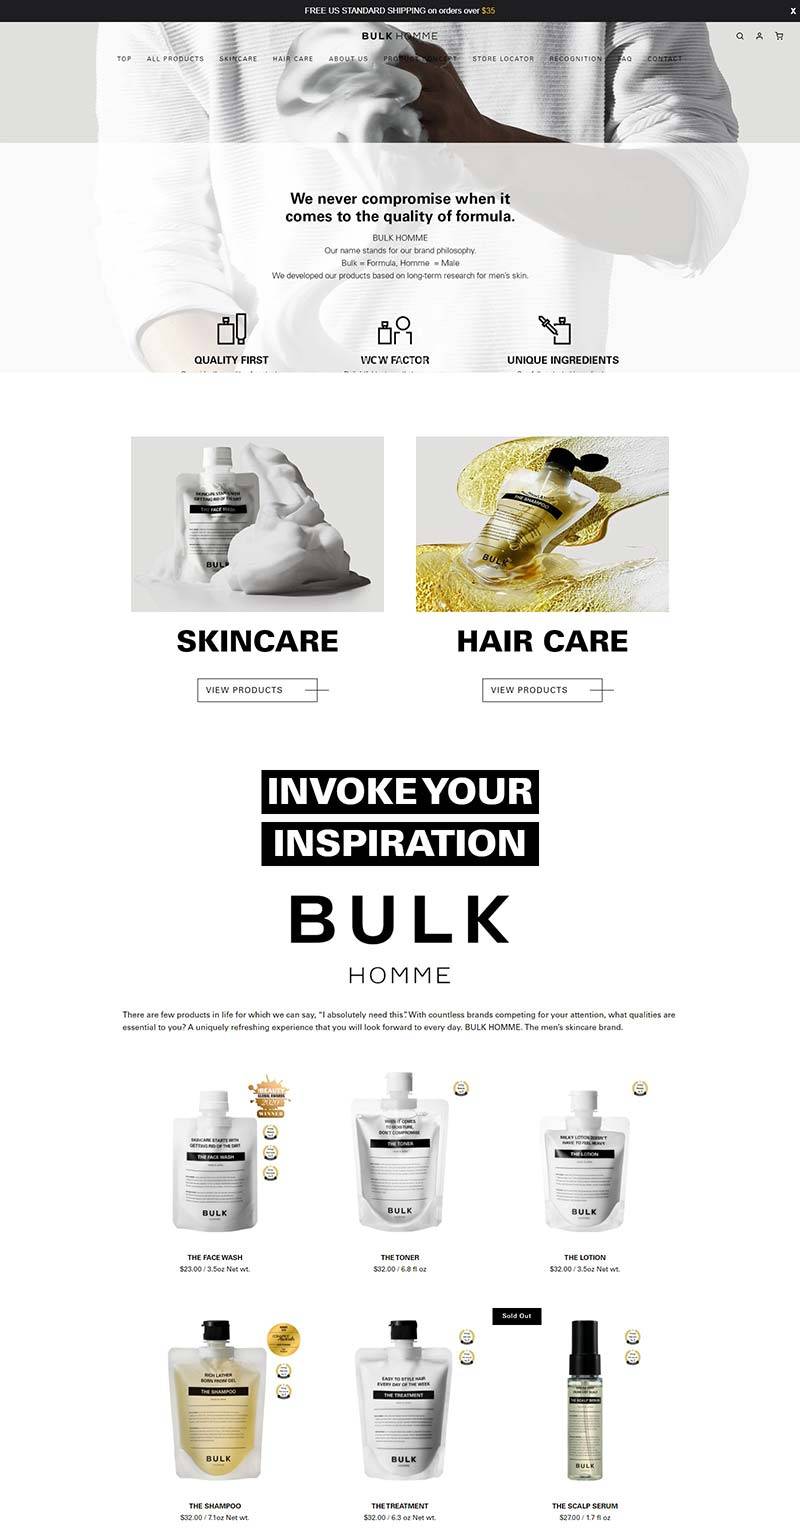 Bulk Homme US 本客-日本男士护肤品牌美国官网